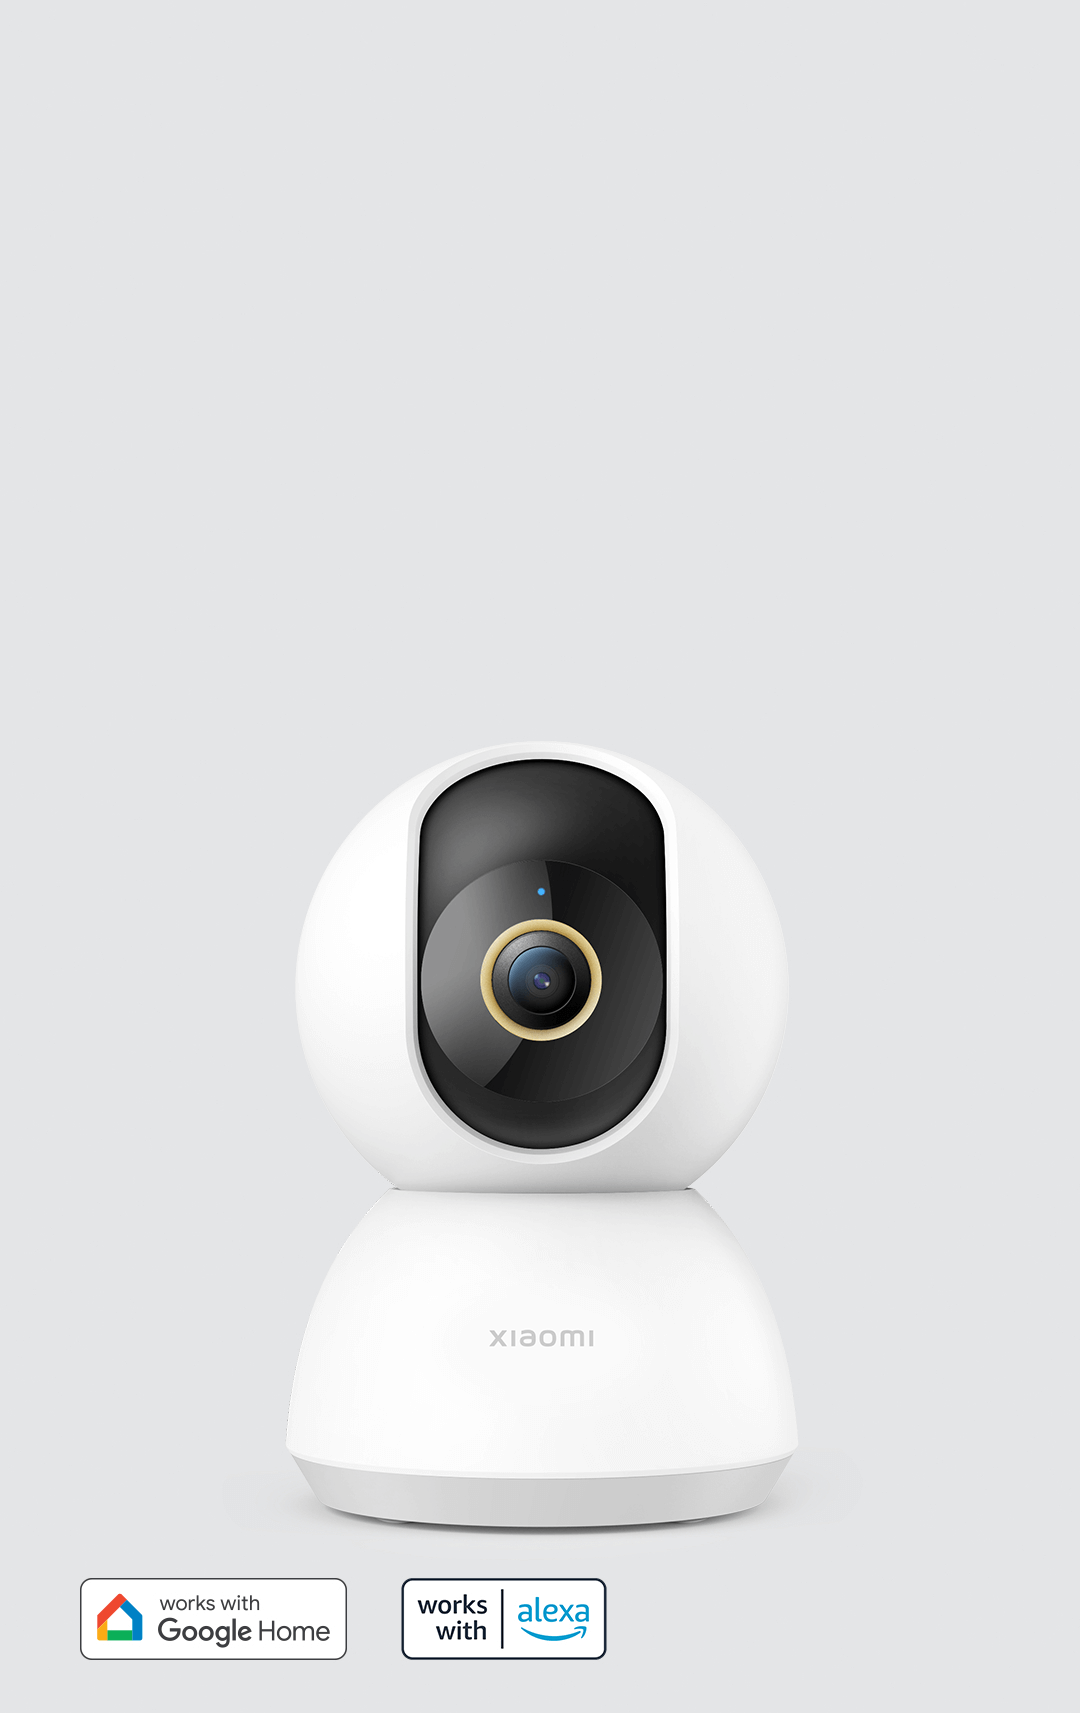 Xiaomi Cámara inteligente C300 - Cámara de vigilancia - LDLC